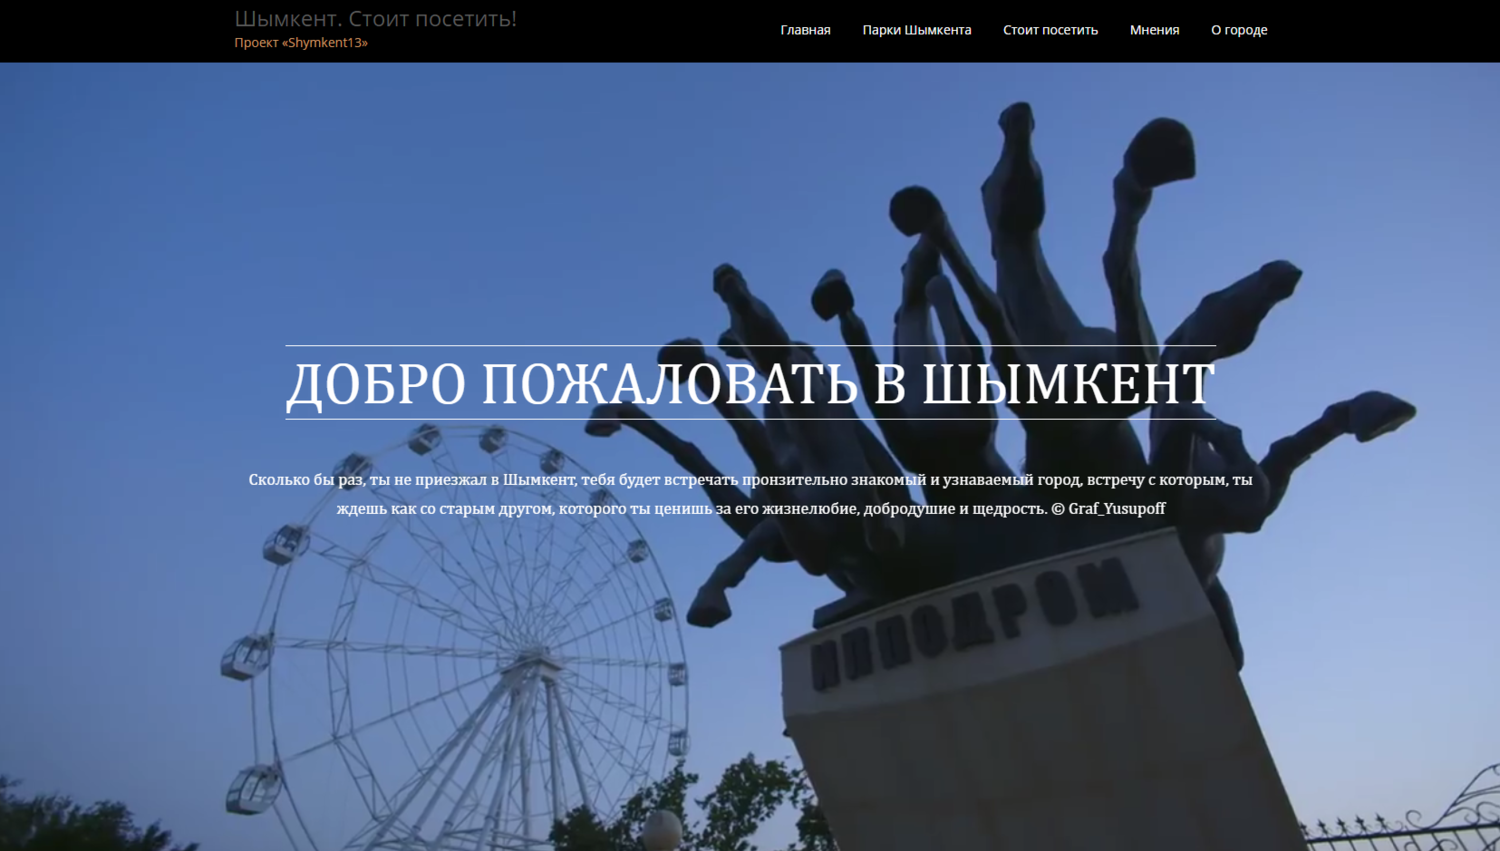 Сайт проекта «Shymkent13» оценили на республиканском ИТ-портале